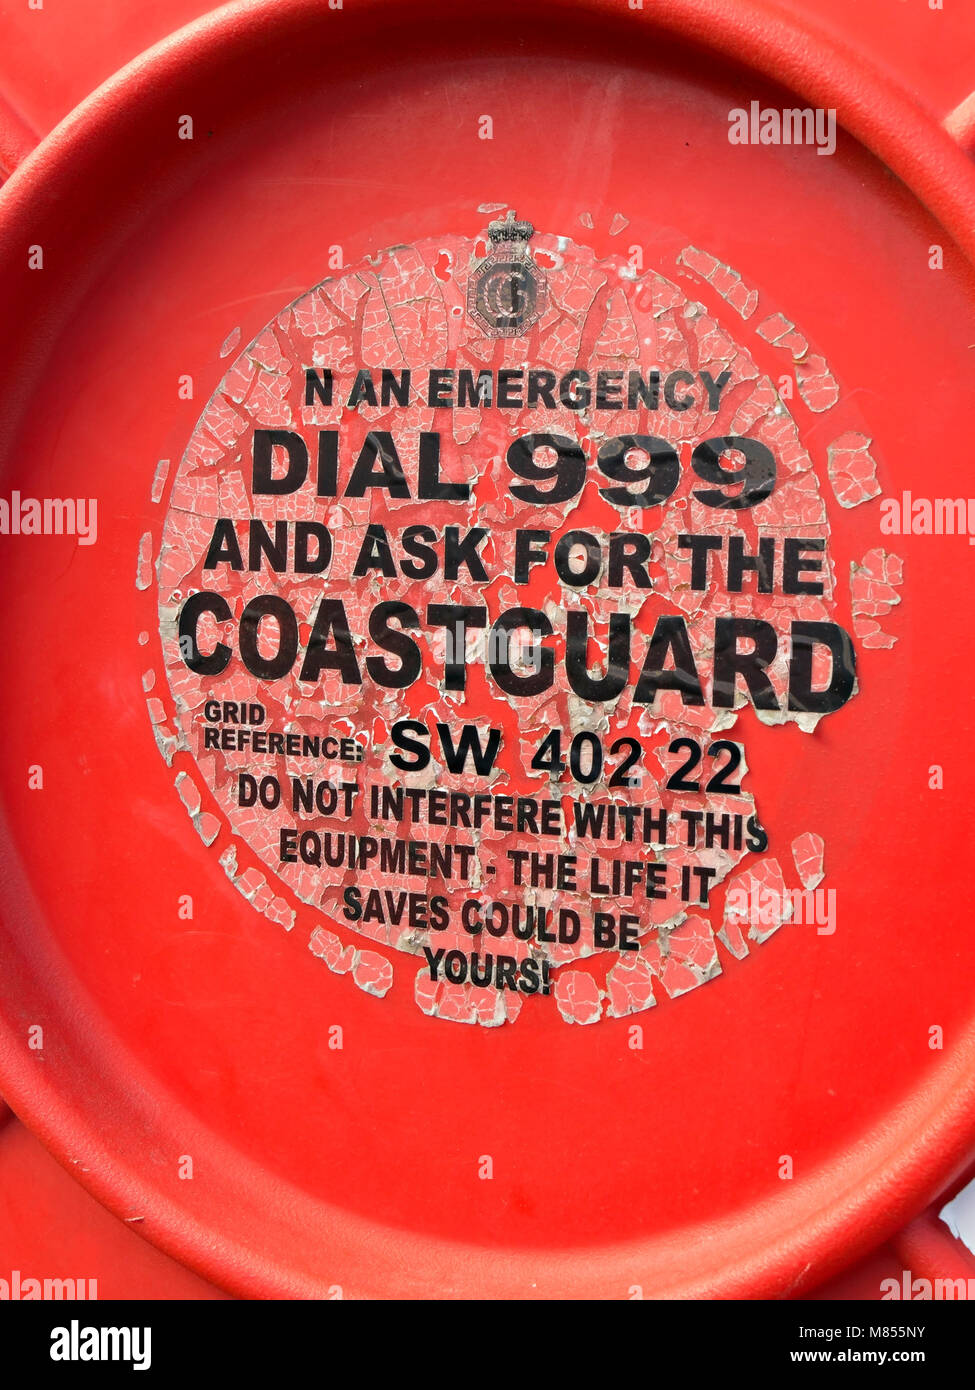 Ancien s'est évanoui et l'épluchage des services d'urgence sur le logement, étiquette bouée Penberth Cove Harbour, Cornwall, England, UK Banque D'Images